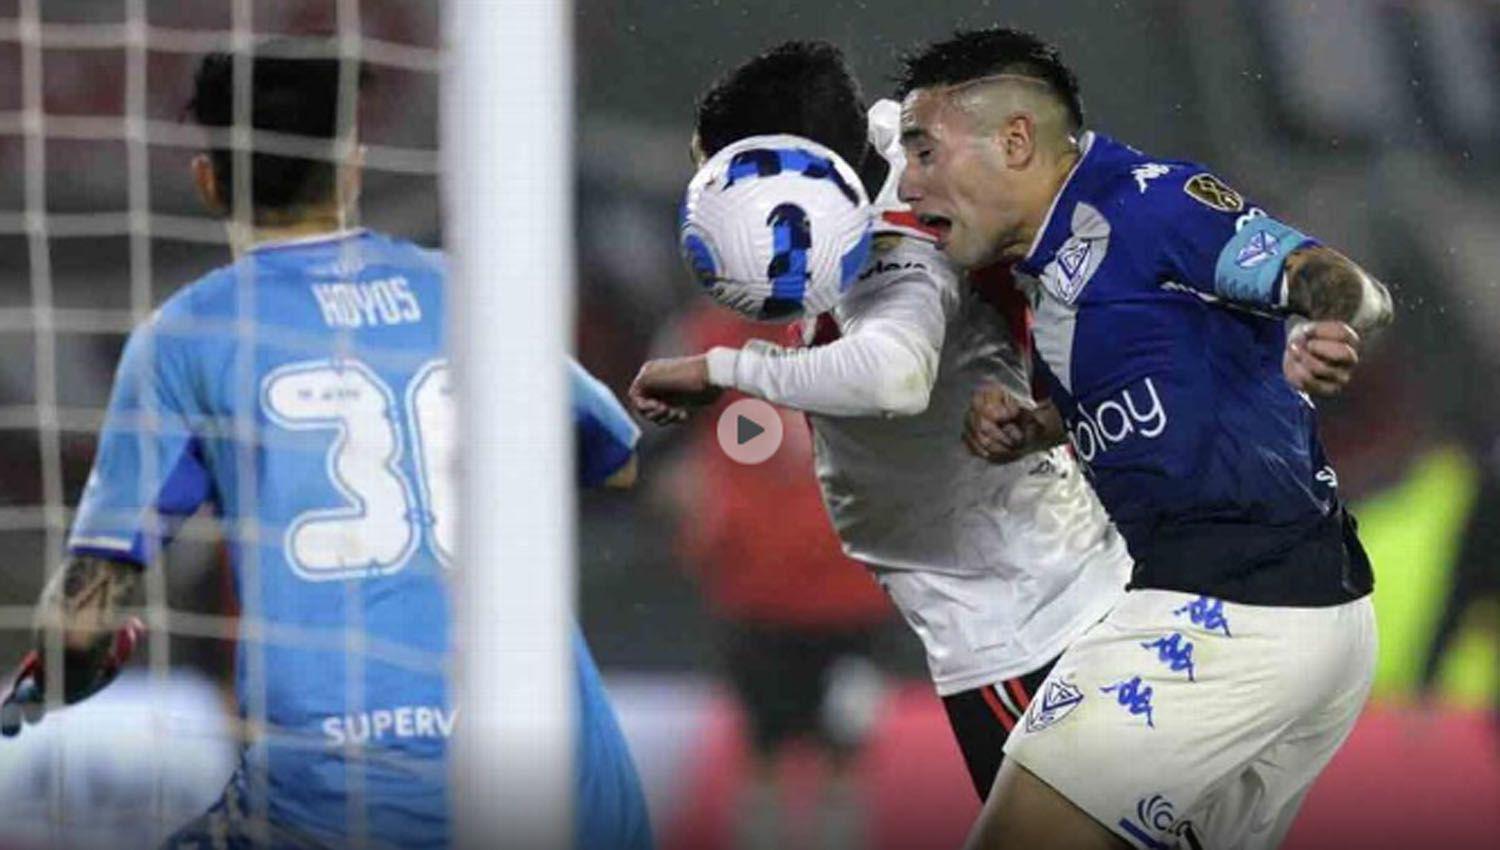 VIDEO  El gol de Matiacuteas Suaacuterez que el VAR anuloacute por una mano imperceptible